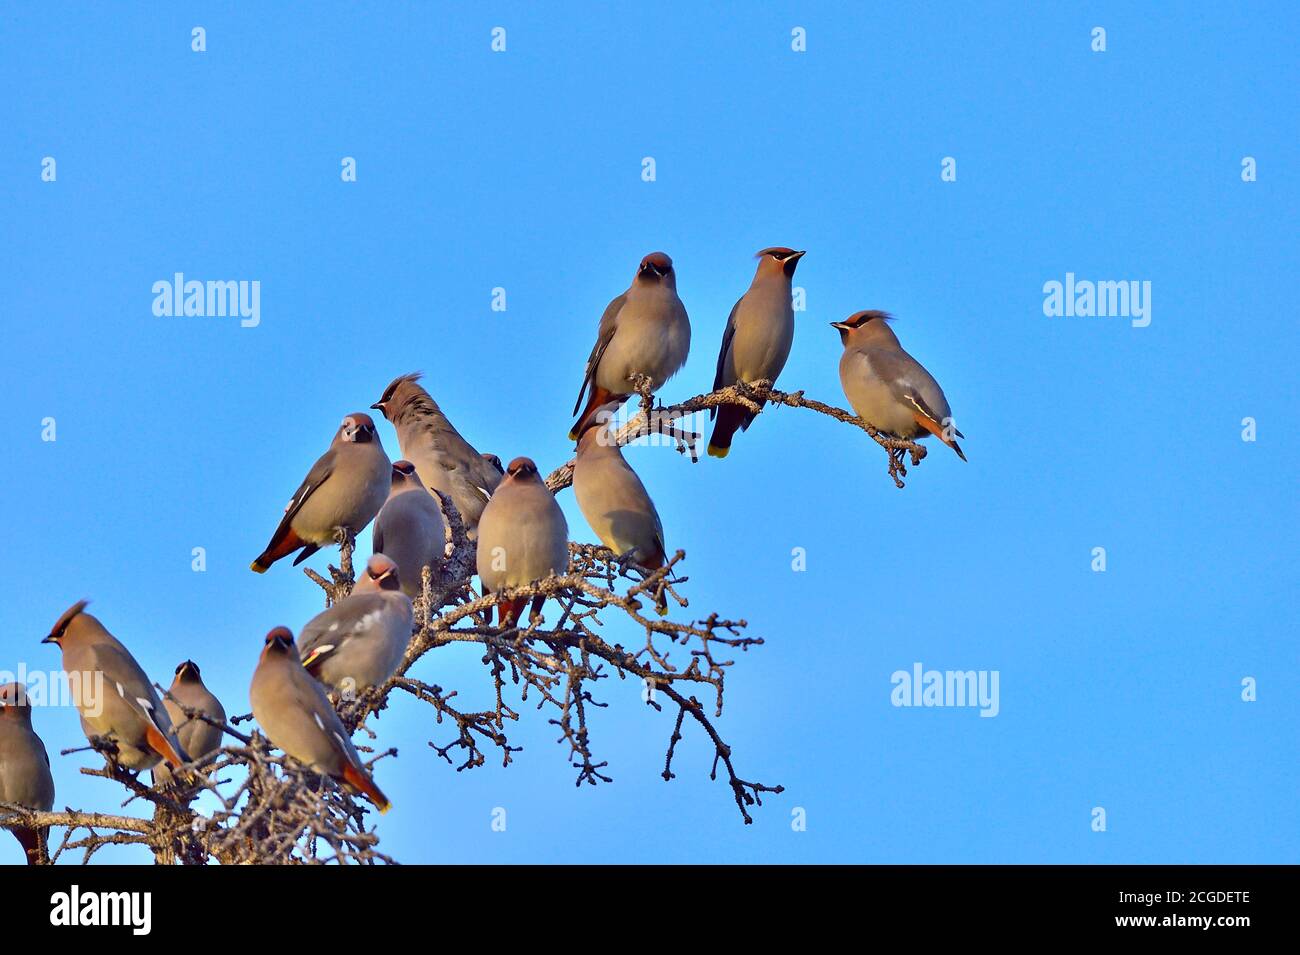 Ein Schwarm böhmischer Wachsflügelvögel, die auf einem Toten landen Baum vor einem blauen Himmel Hintergrund Stockfoto